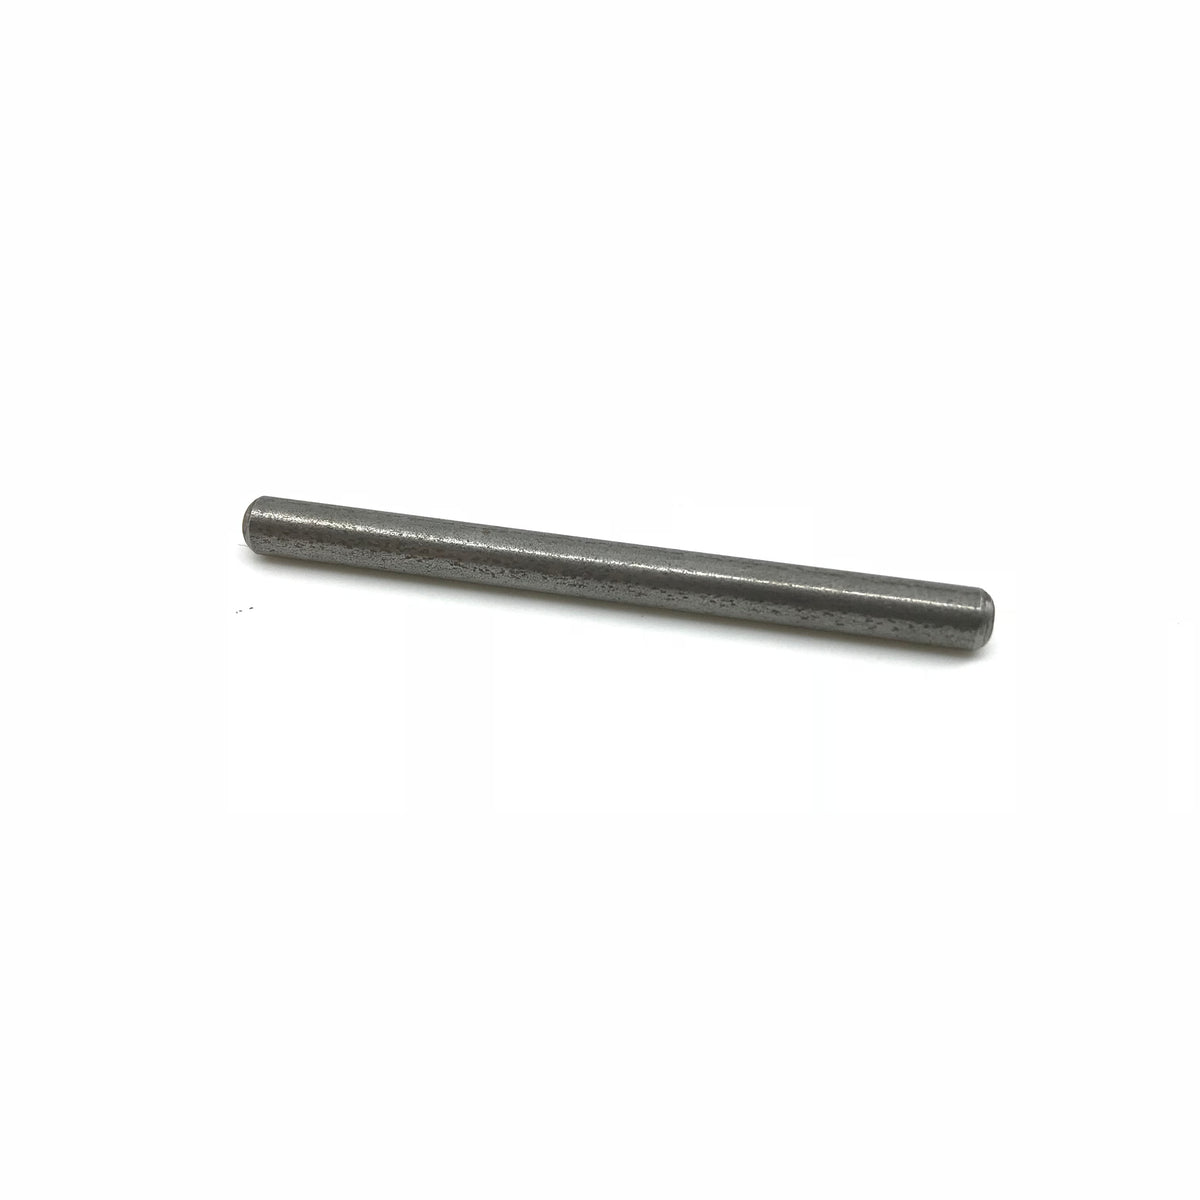 Zabala Sear, Hammer Pivot Pin